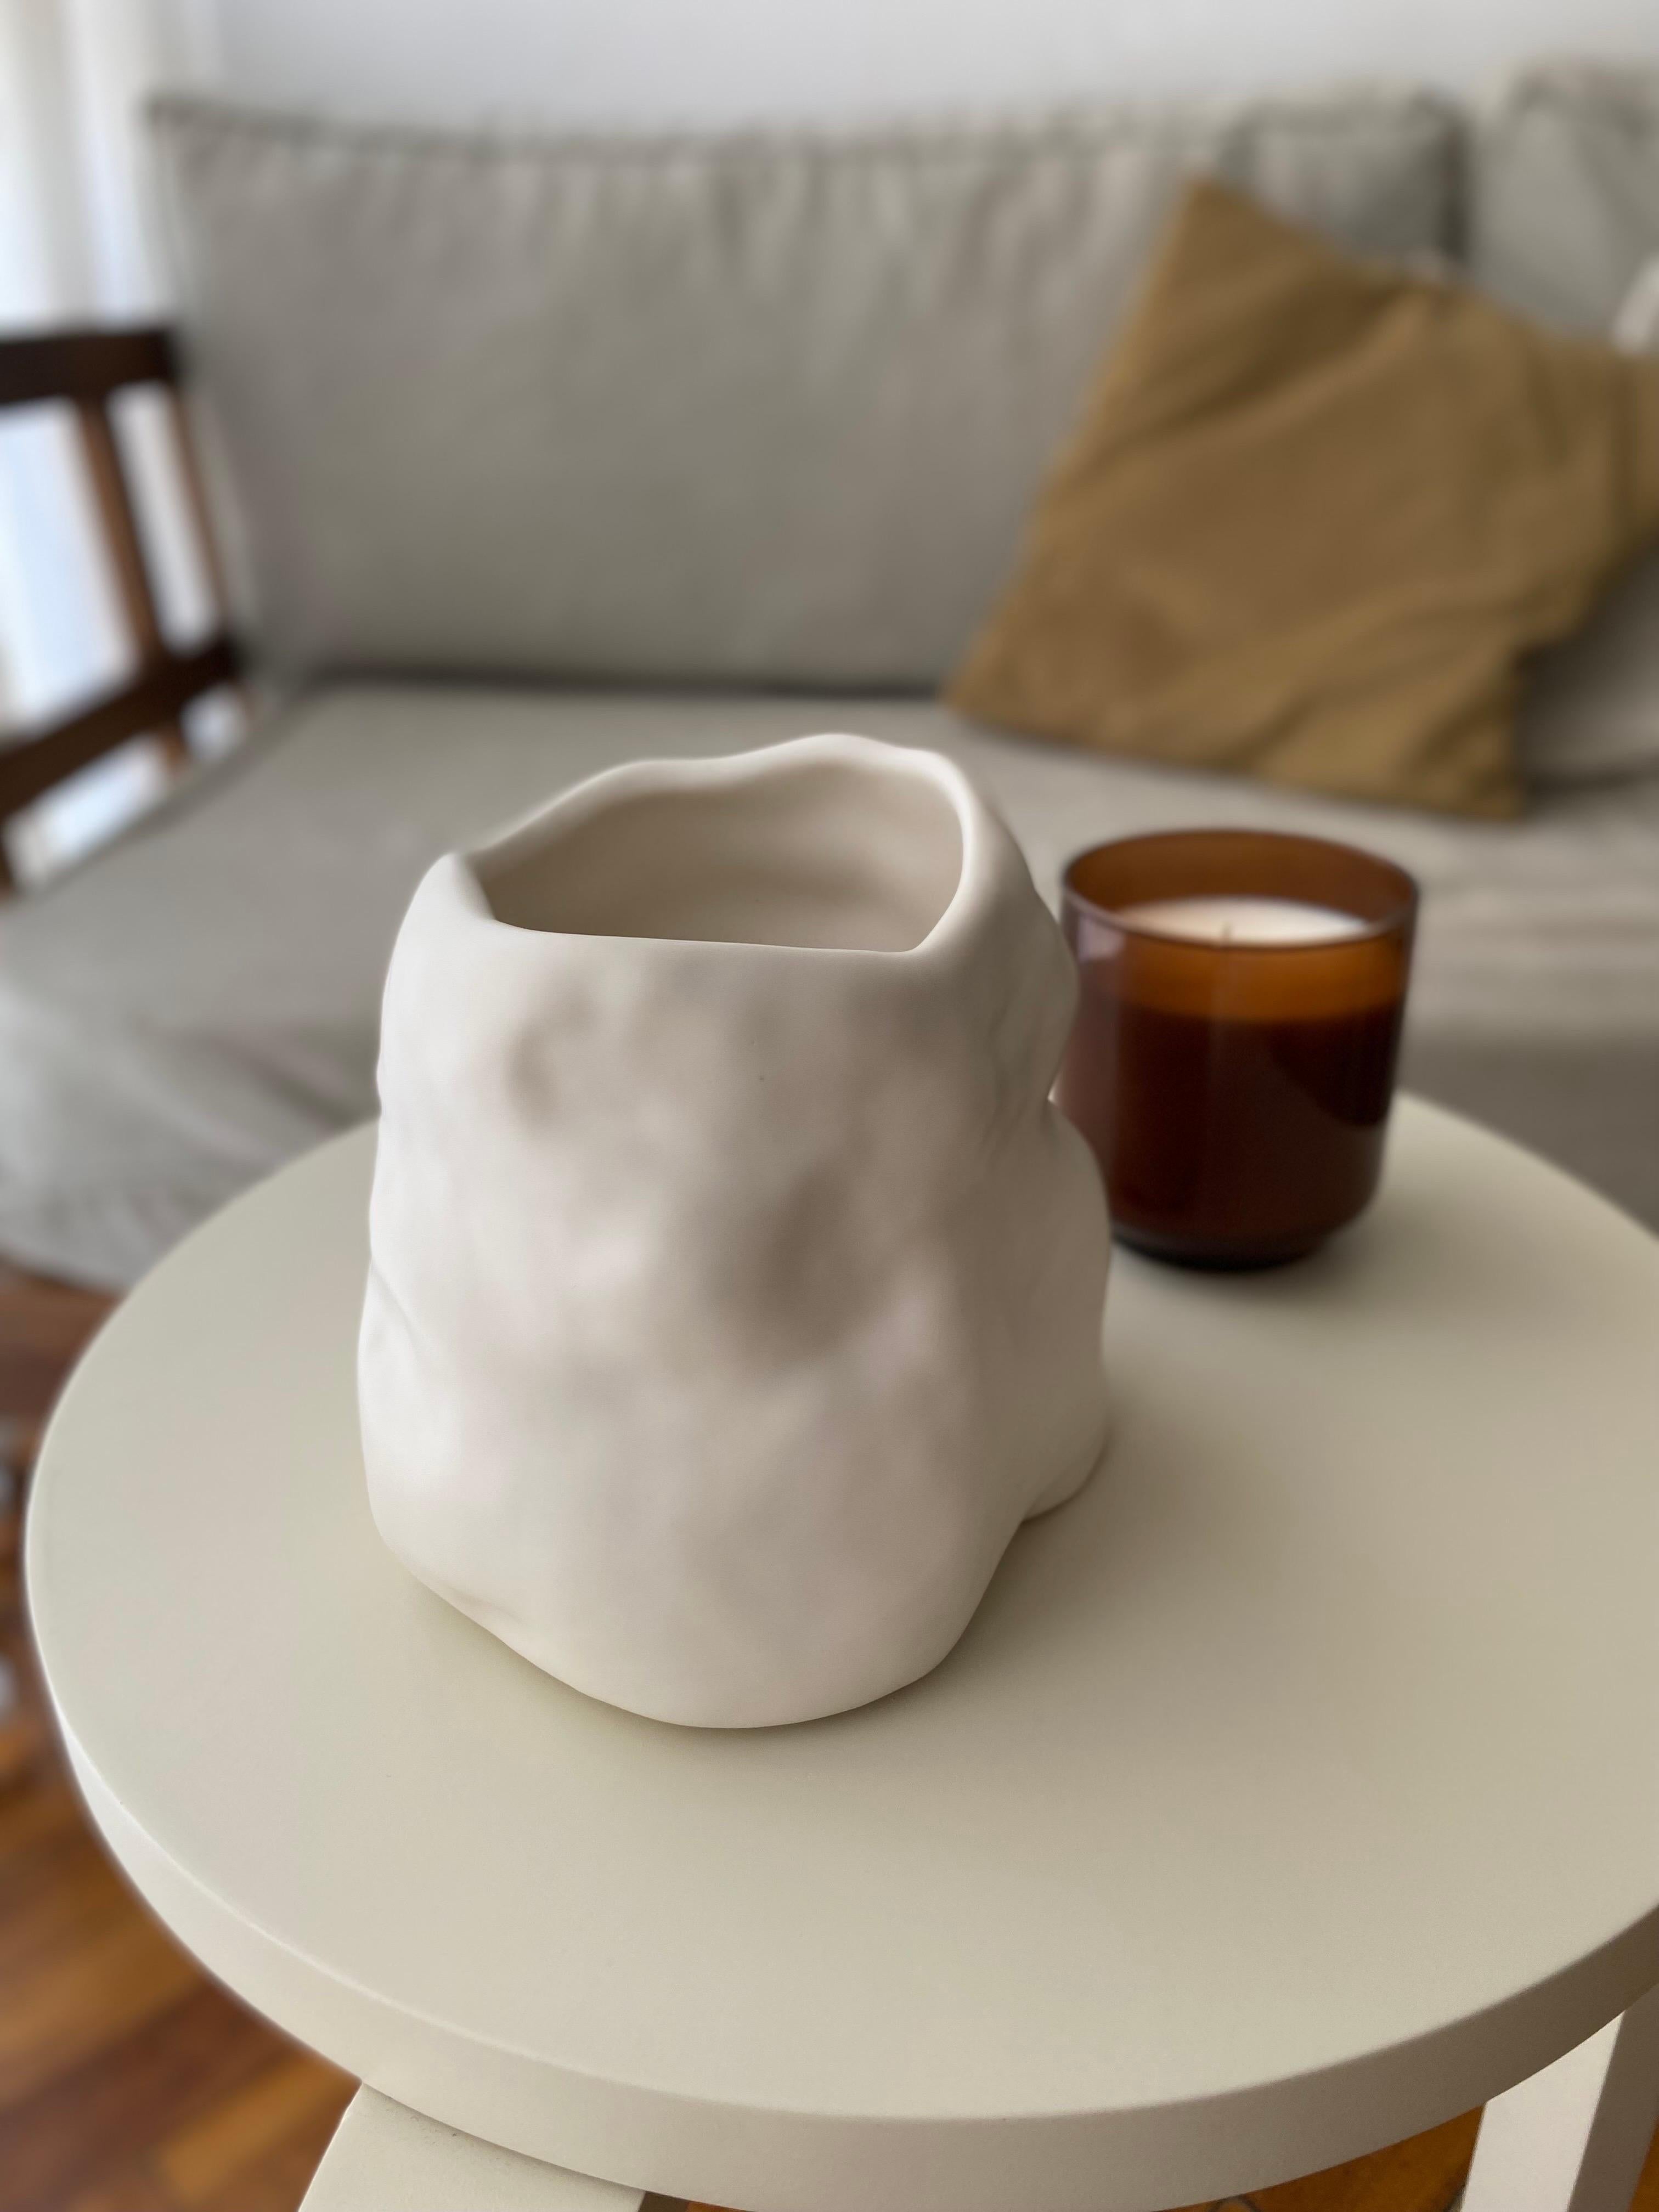 Diese schöne Blumenvase aus Keramik ist der perfekte Akzent, um jedem Raum einen Hauch von Stil zu verleihen. Die Vase aus hochwertiger und langlebiger Keramik ist handbemalt und mattiert und hat eine organische Form, die ihre Schönheit